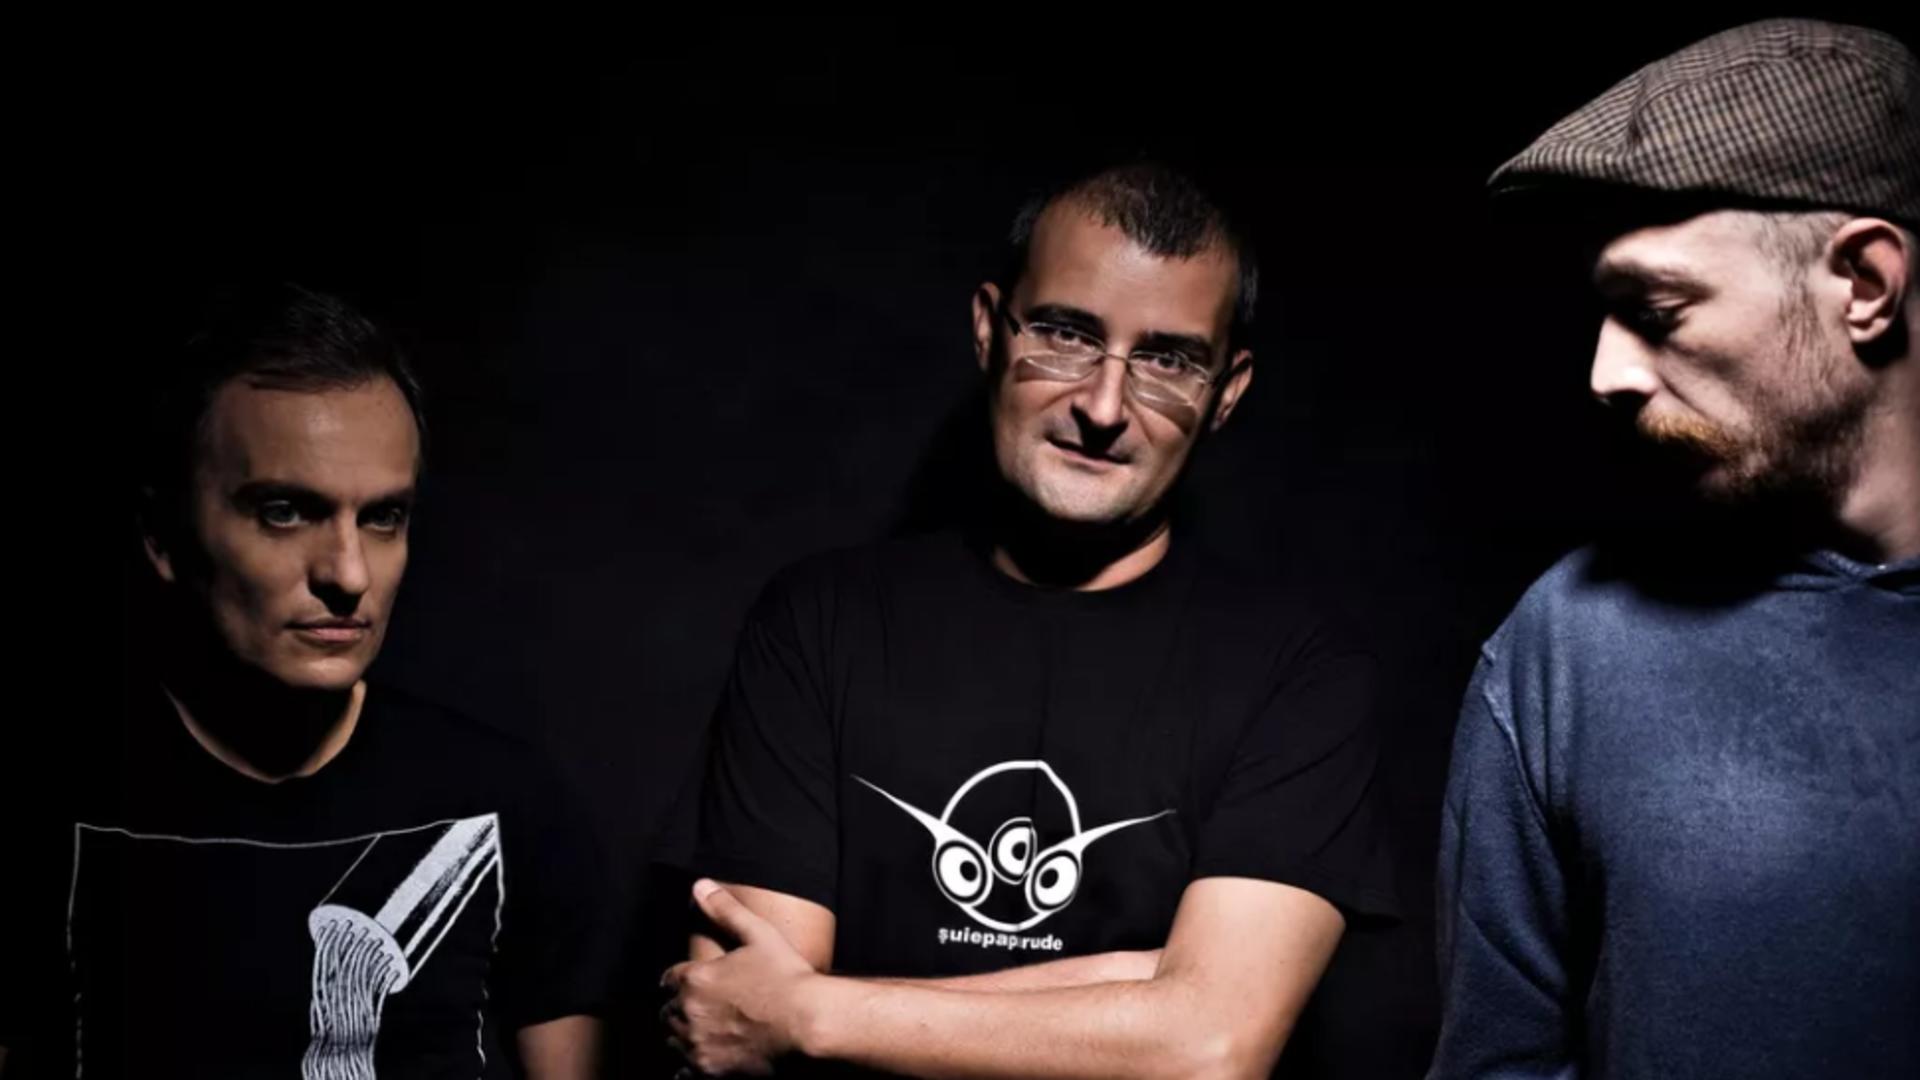 Cei 3 membri ai trupei Șuie Paparude, răniți într-un accident în Timișoara – Anunț despre concertul de joi seară – VIDEO